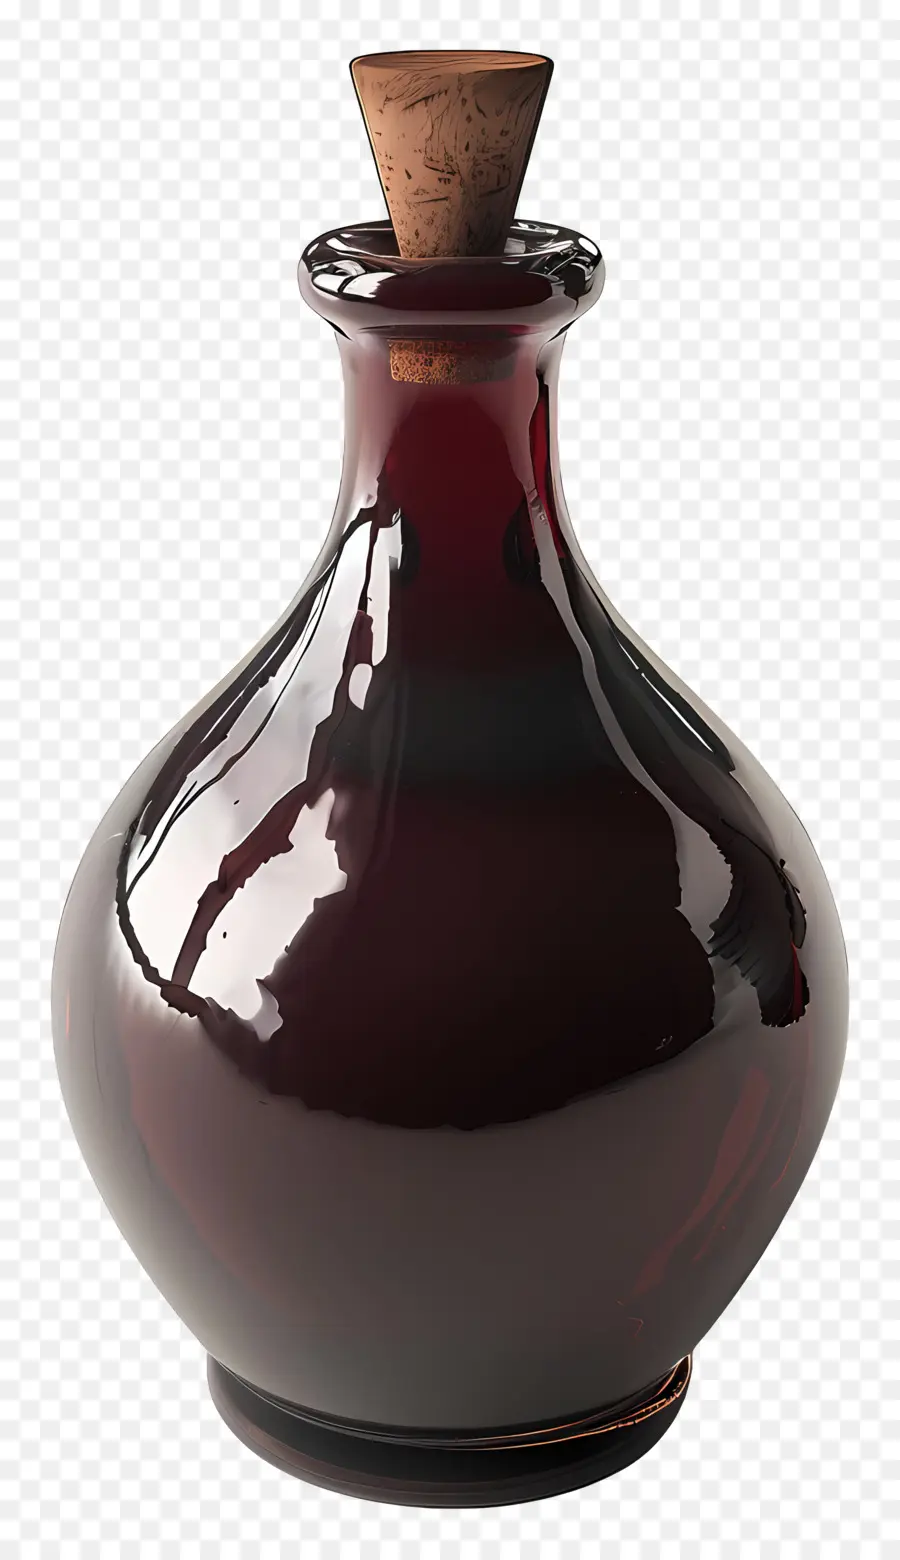 النبيذ，زجاجة PNG